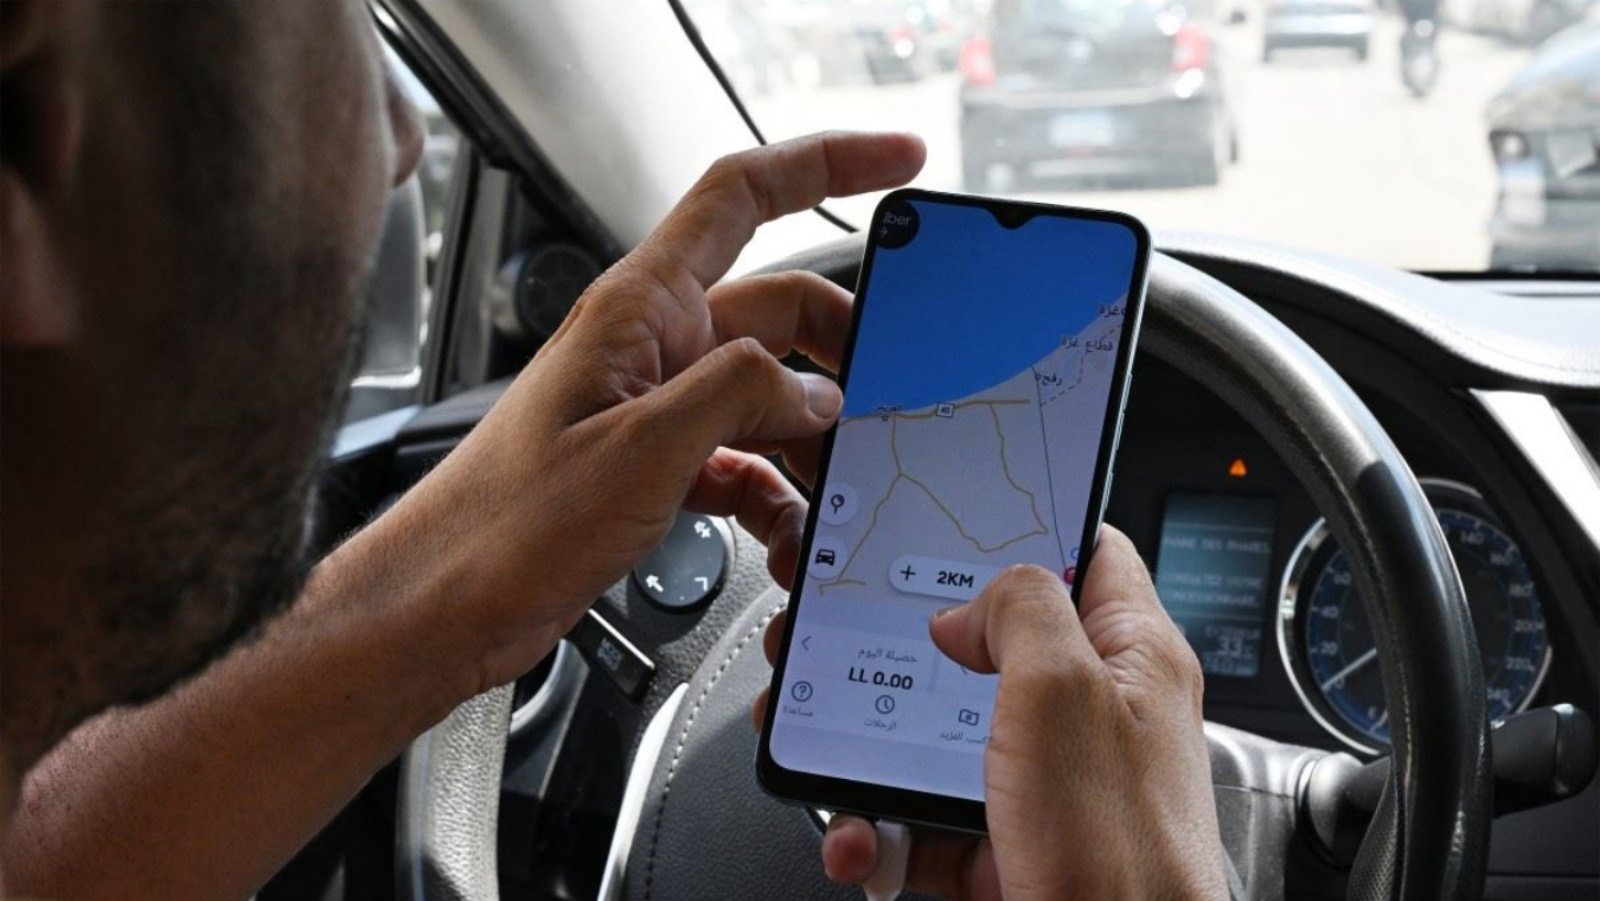 السائق اللبناني حسين خليل ينظر إلى نظام تحديد المواقع العالمي (GPS) على تطبيق أوبر الذي يُظهر أنه في منطقة الهرمل في وادي البقاع الشرقي بلبنان، بينما يجلس في سيارته في شارع الحمرا ببيروت في 11 حزيران (يونيو) 2024 